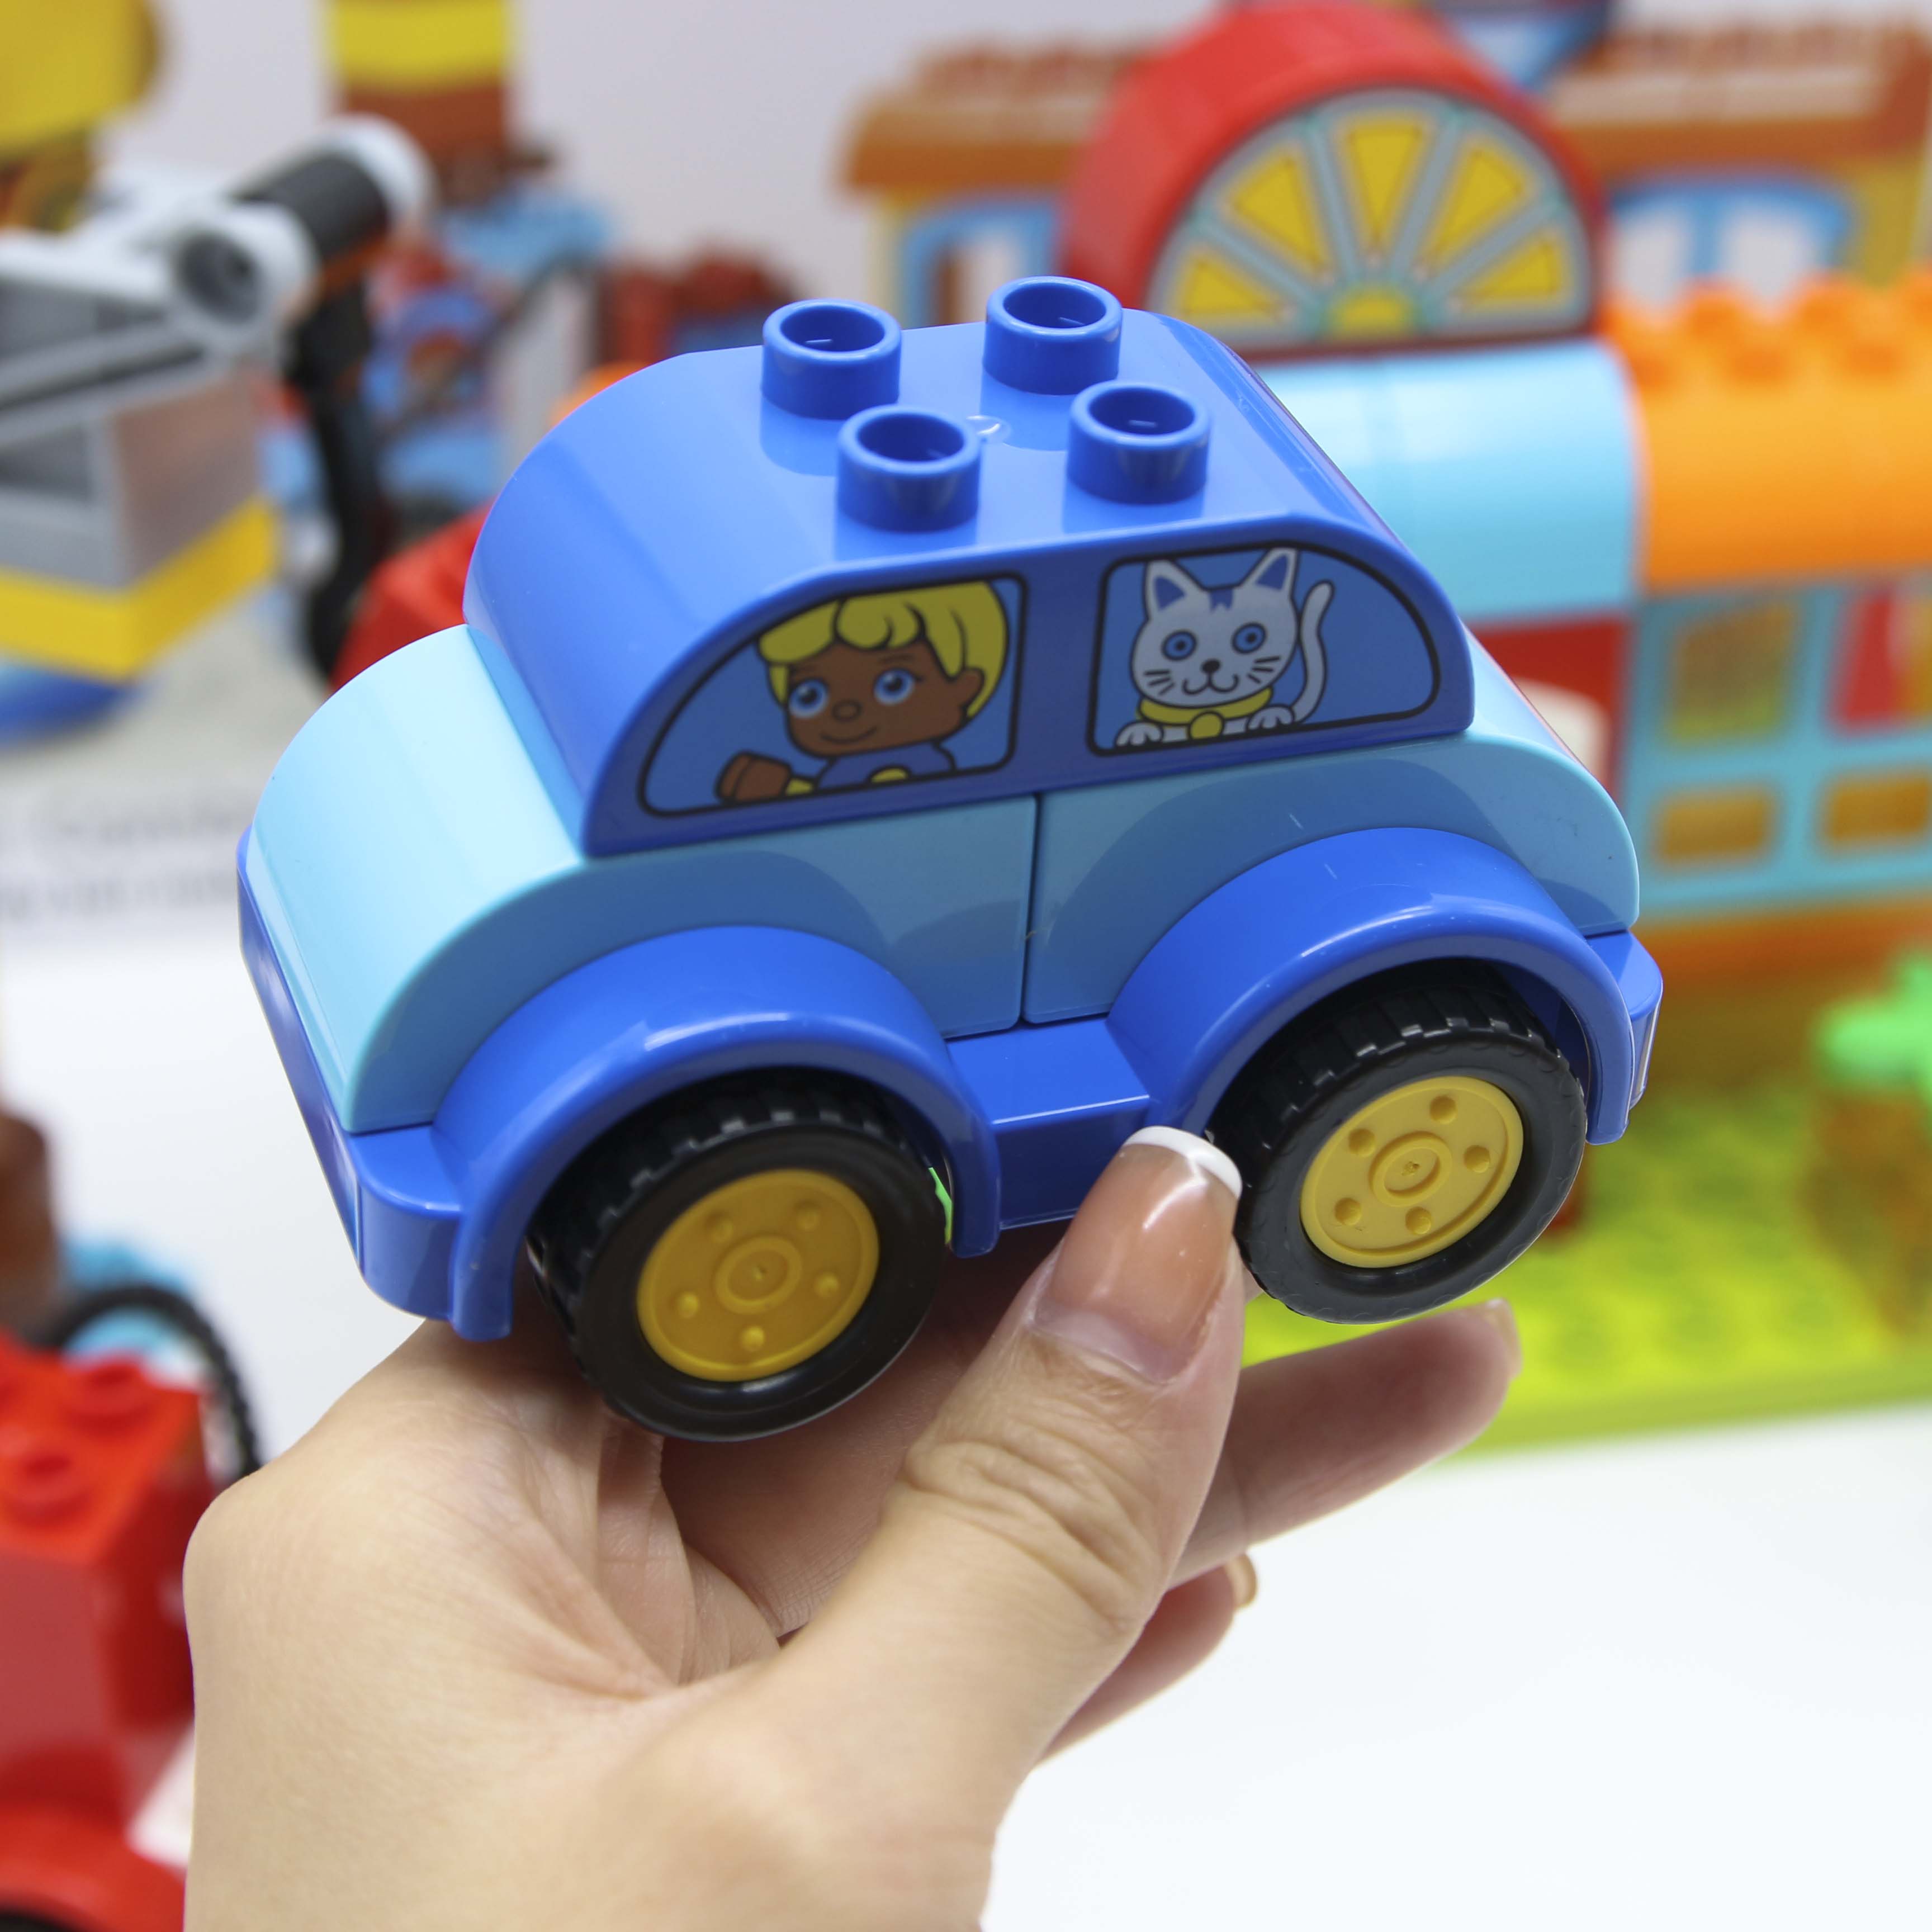 Bộ đồ chơi lắp ghép Smoneo Lego Duplo phương tiện cứu hộ giao thông - 68 mảnh ghép Toyshouse - 77004